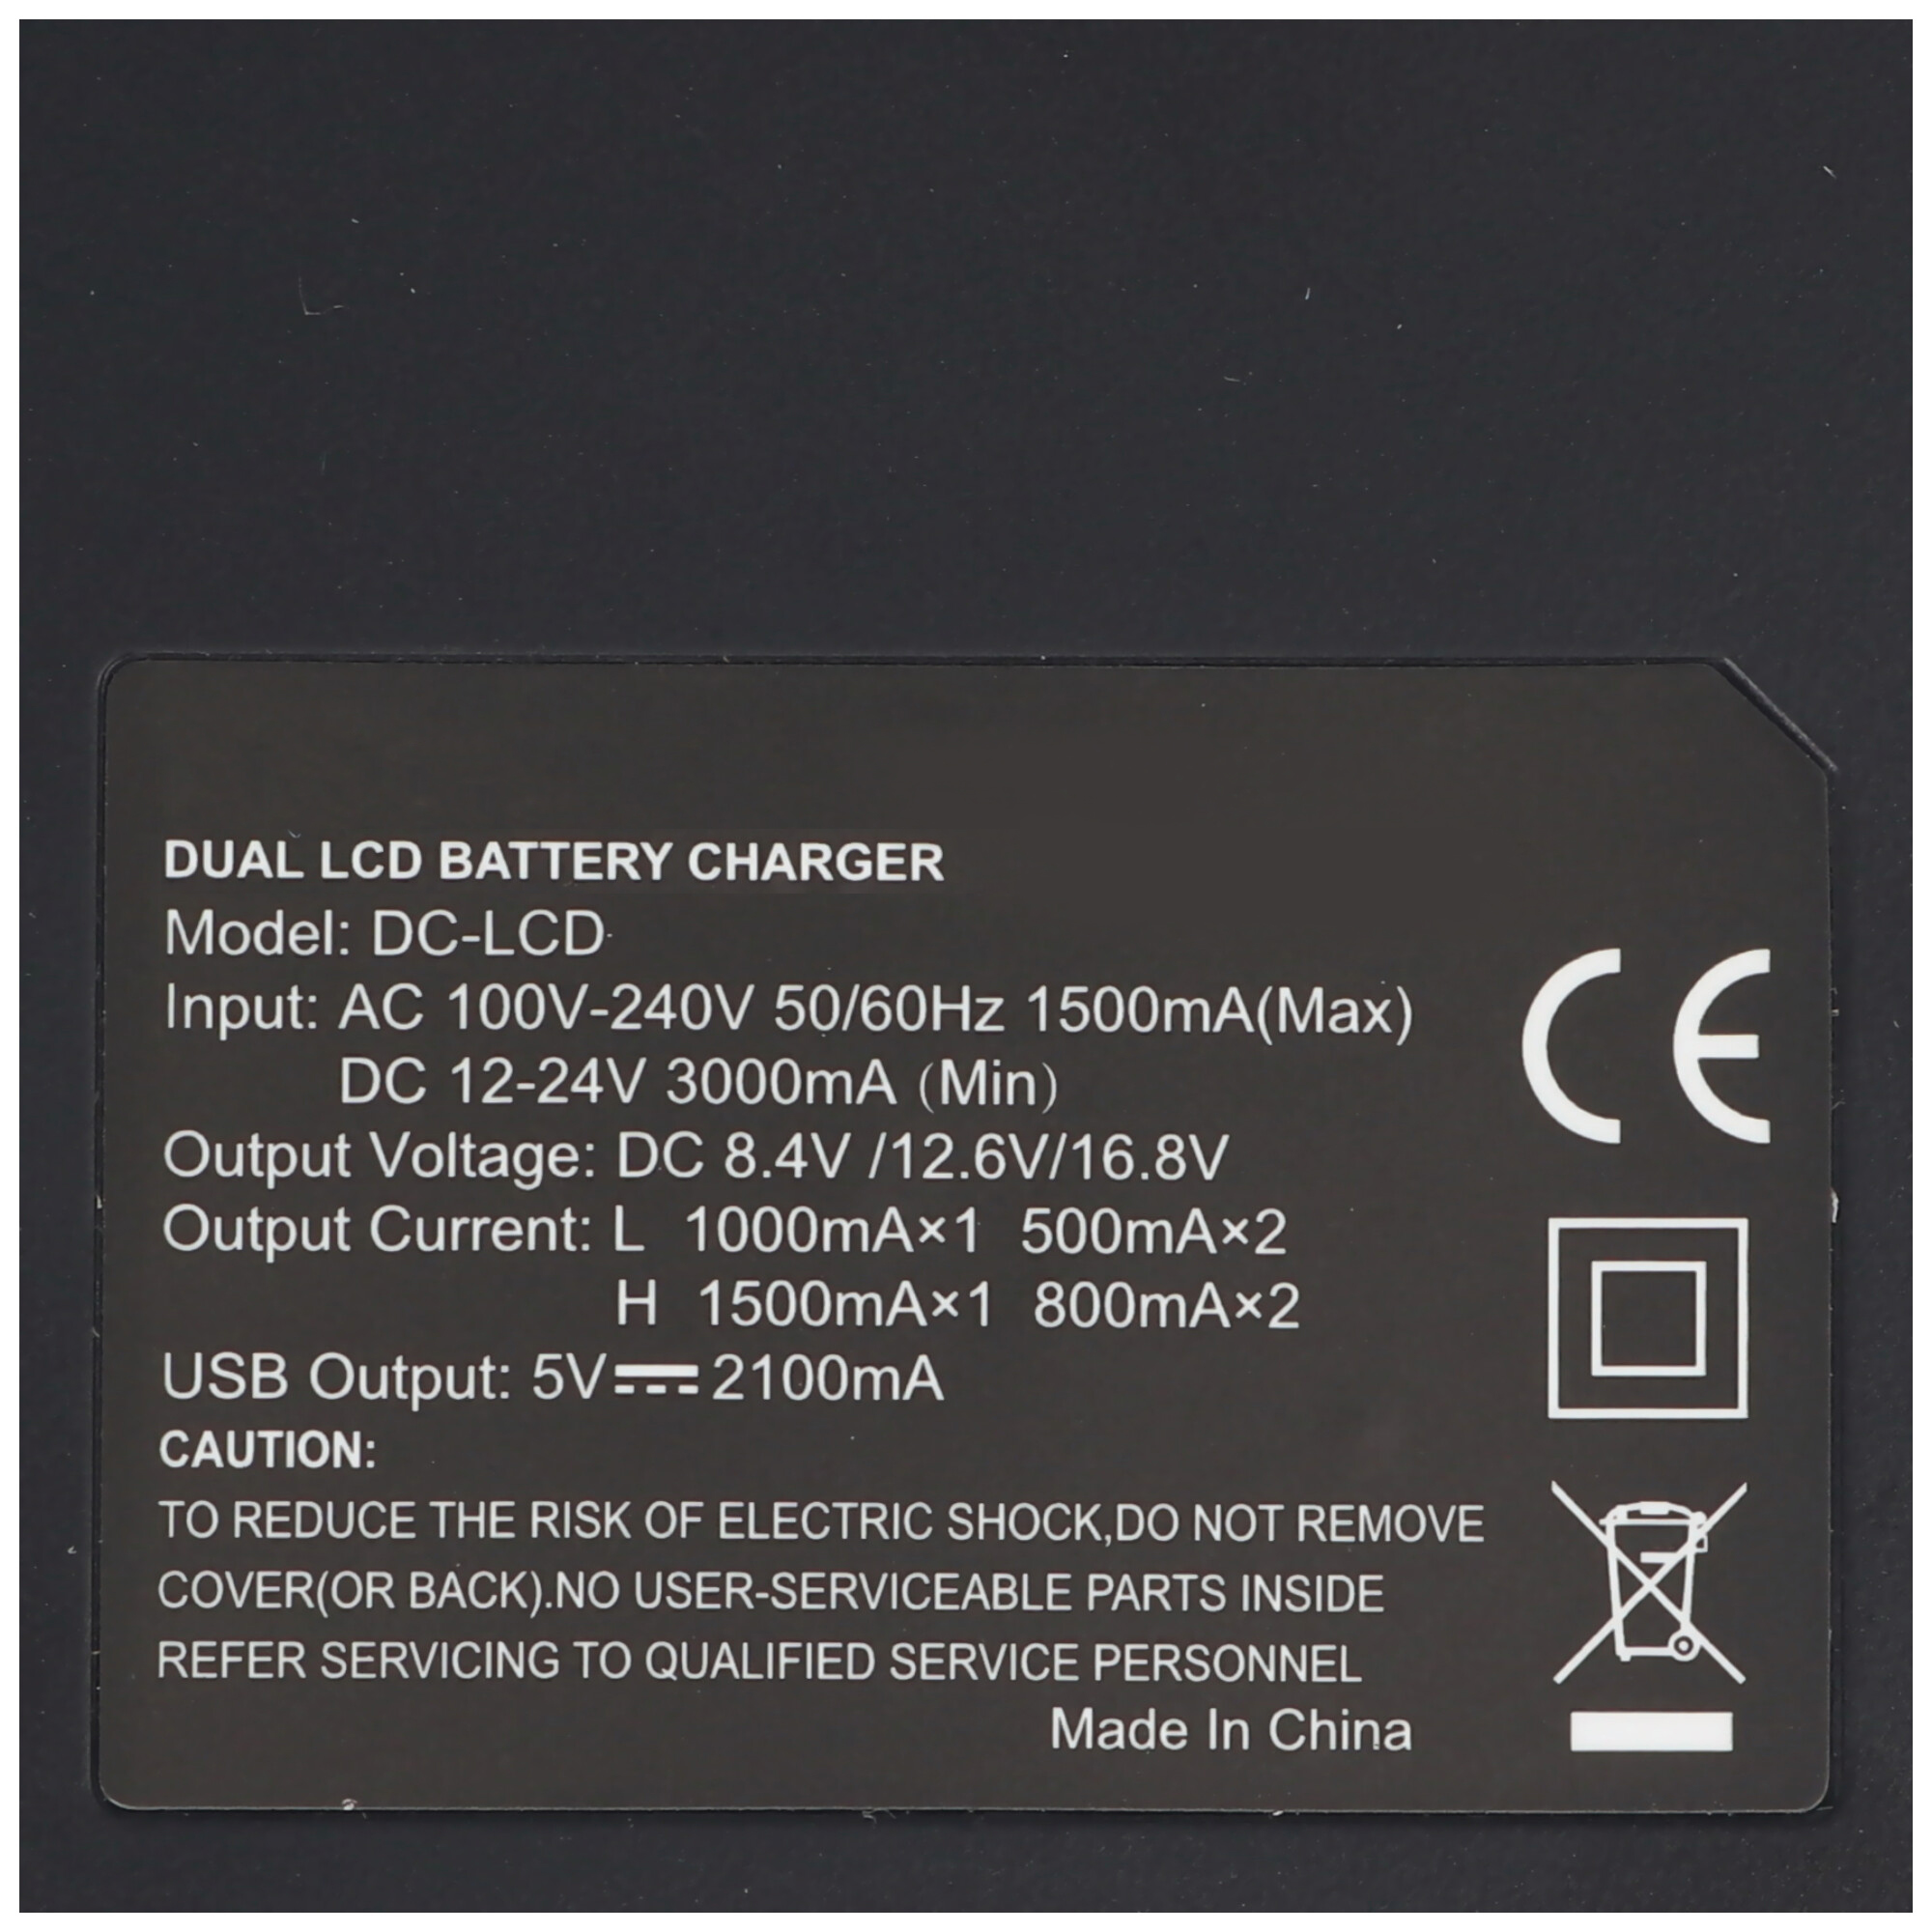 DUAL LCD Schnell-Ladegerät passend für Panasonic Akku CGR-D120, -D220, -D320